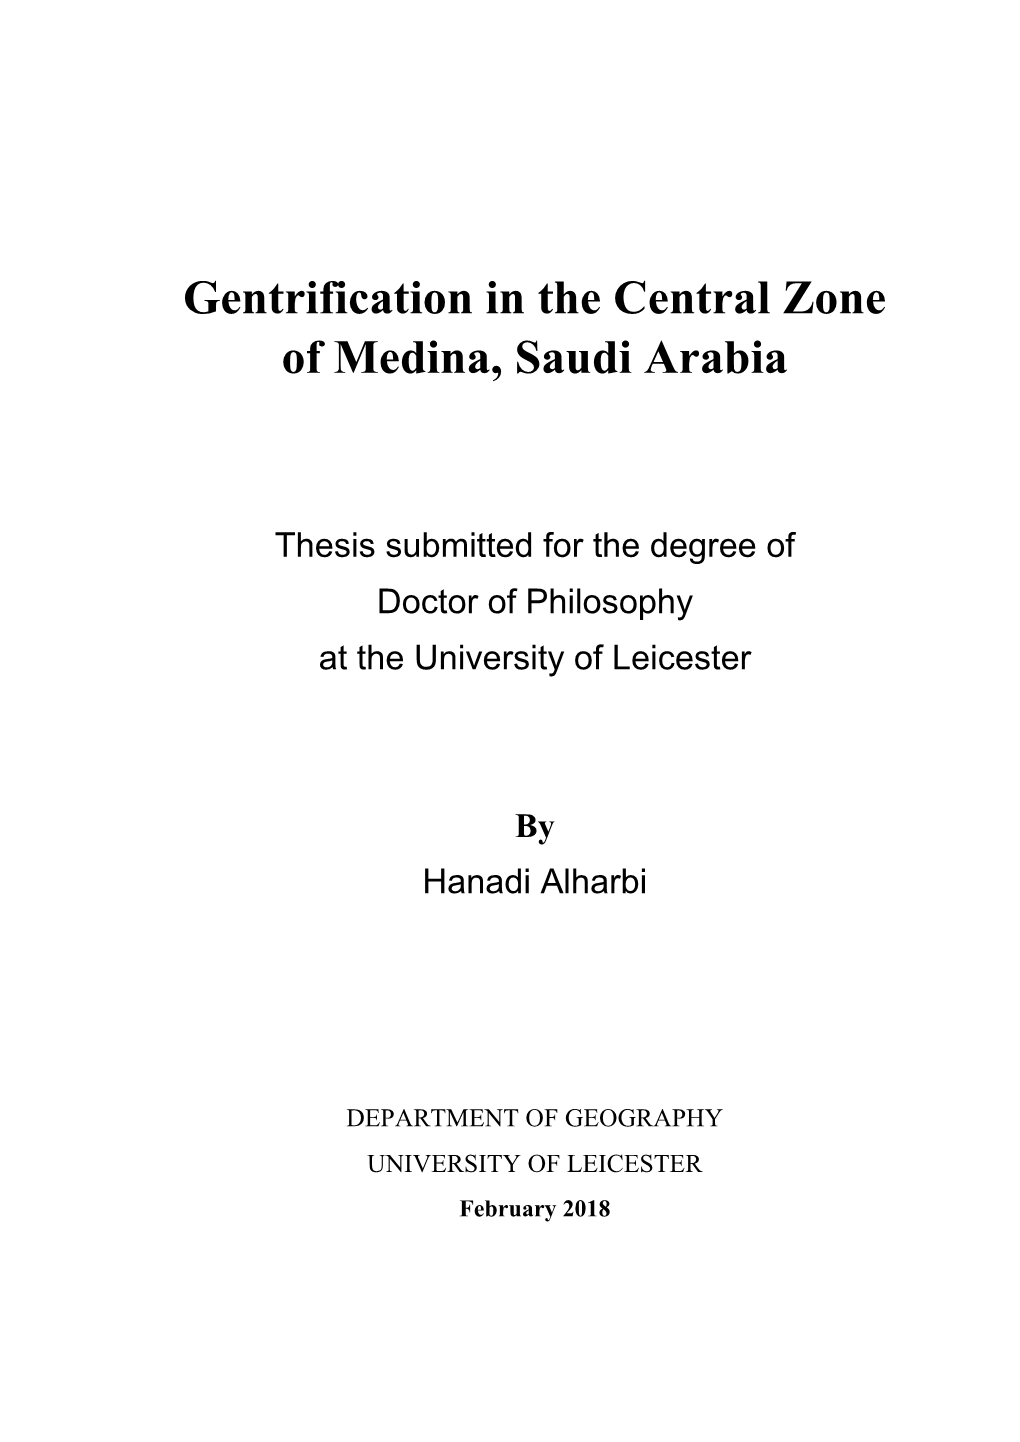 Gentrification in the Central Zone of Medina, Saudi Arabia